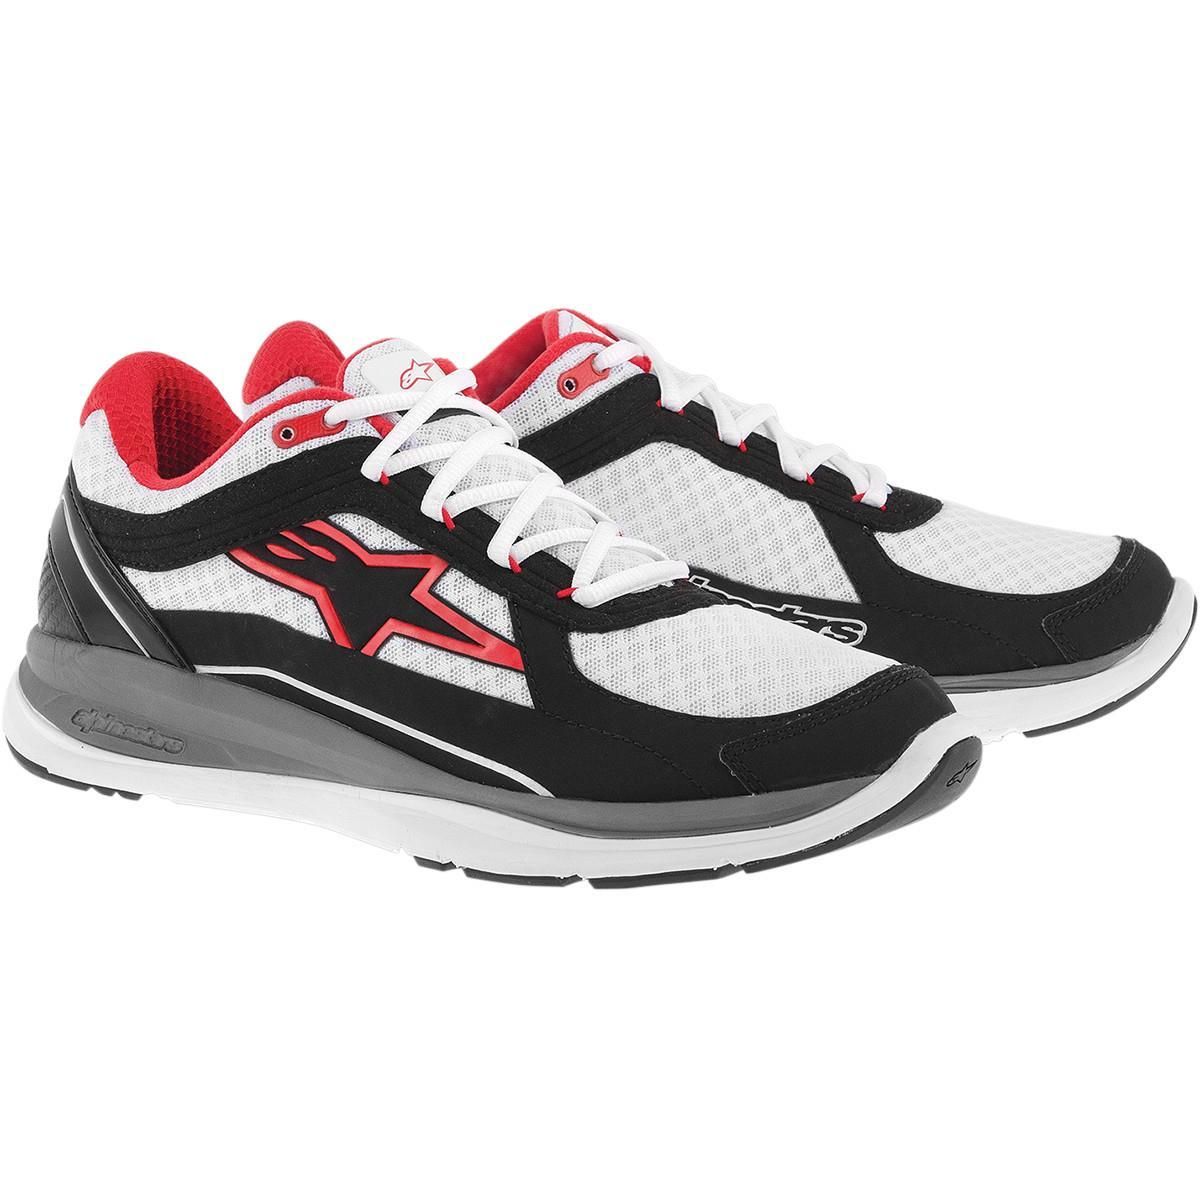 2UDJ-ALPINESTA-2654014213-6 100 Running Shoes